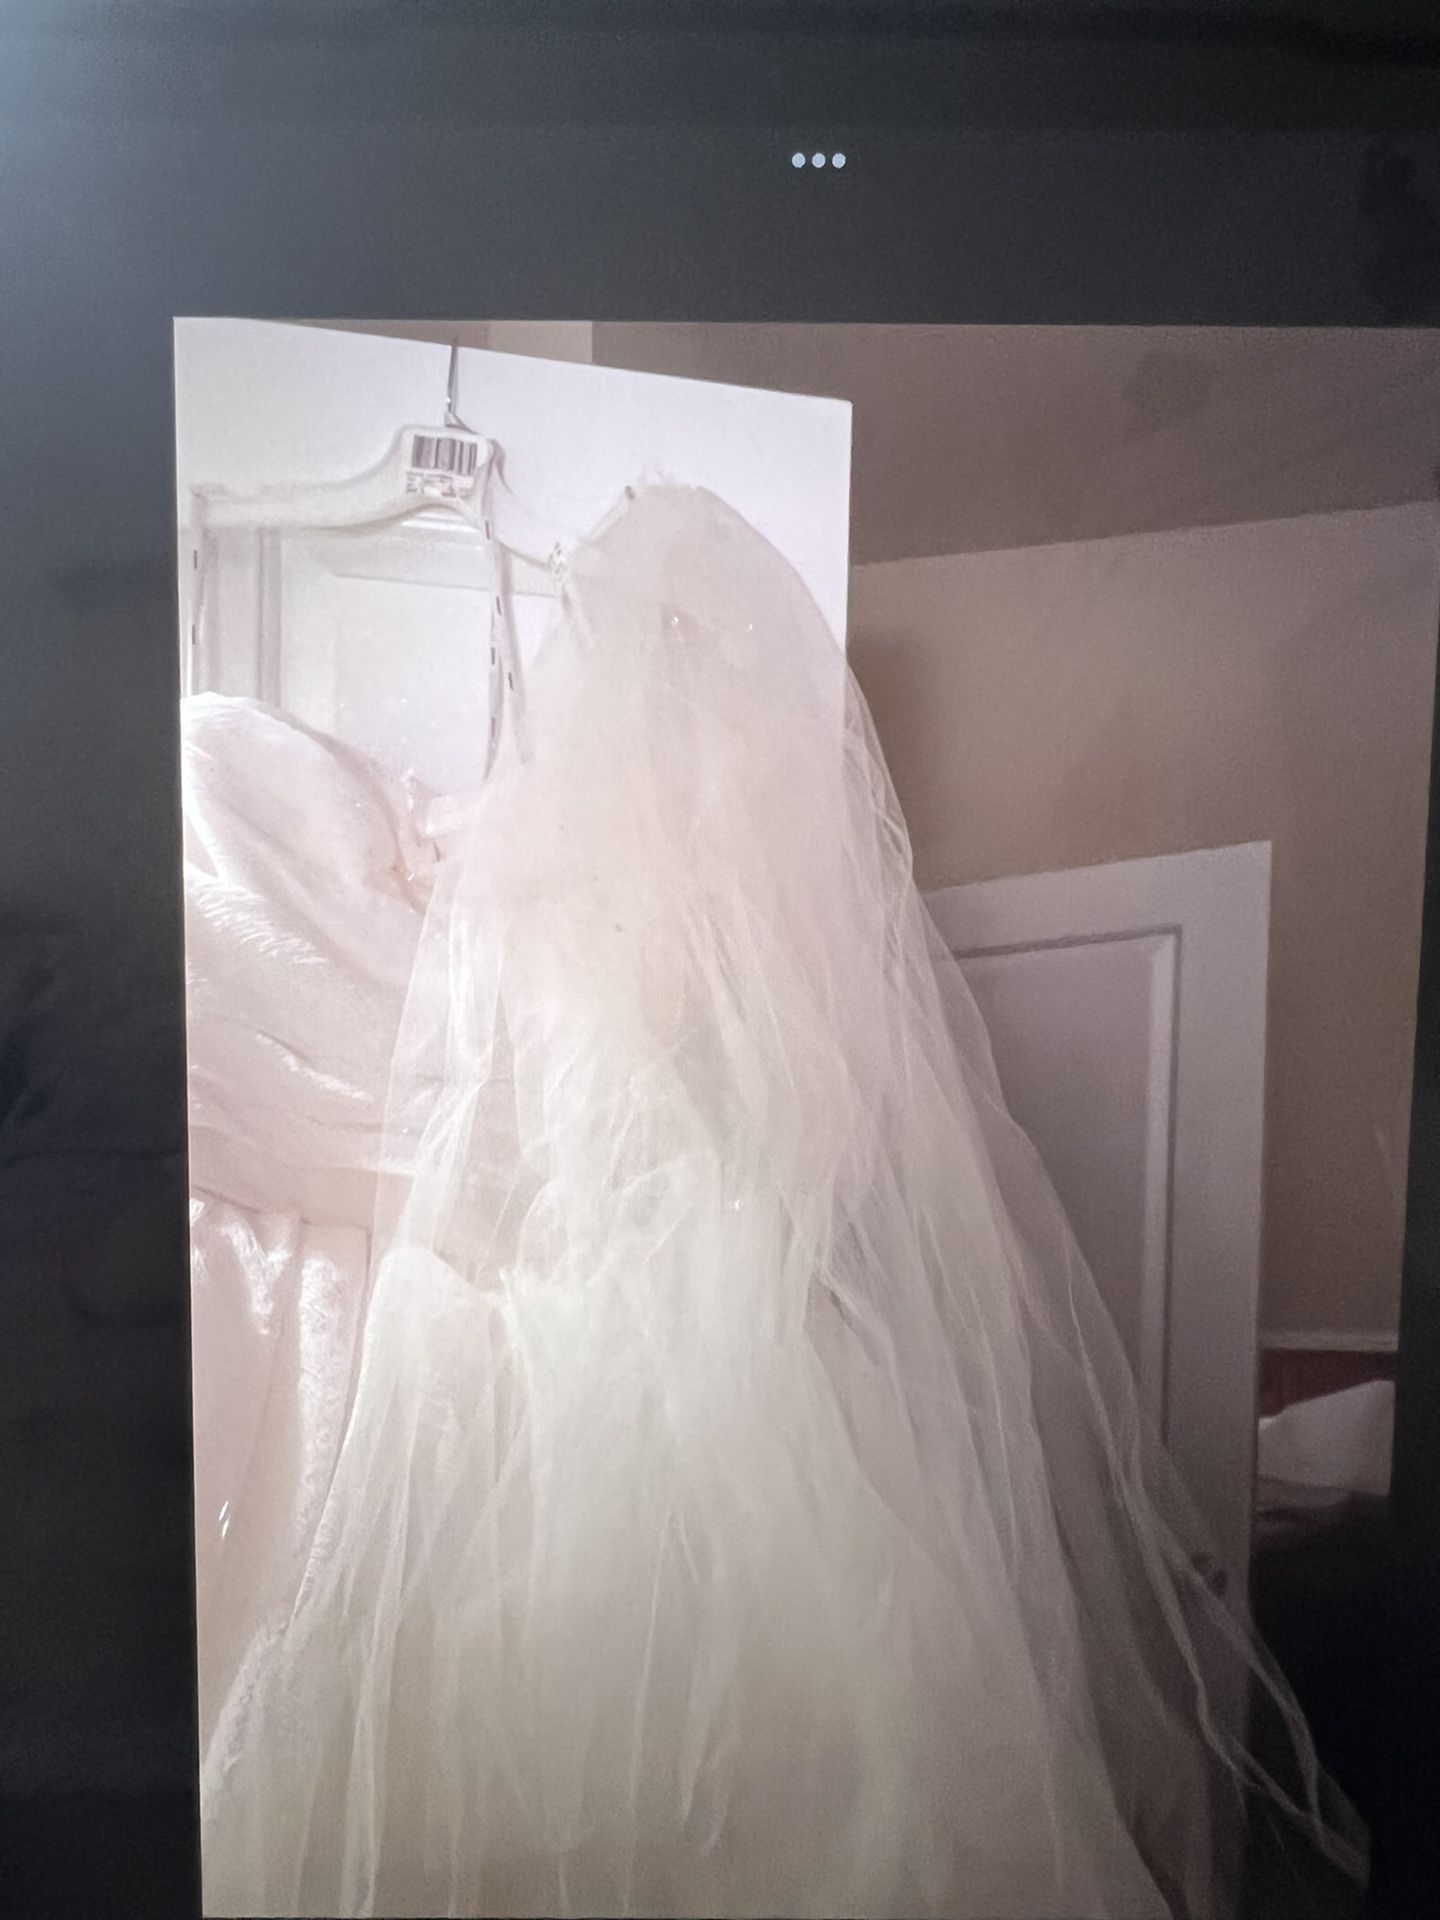 Beautiful ballgown wedding dress abd Veil  Never worn. Size 10